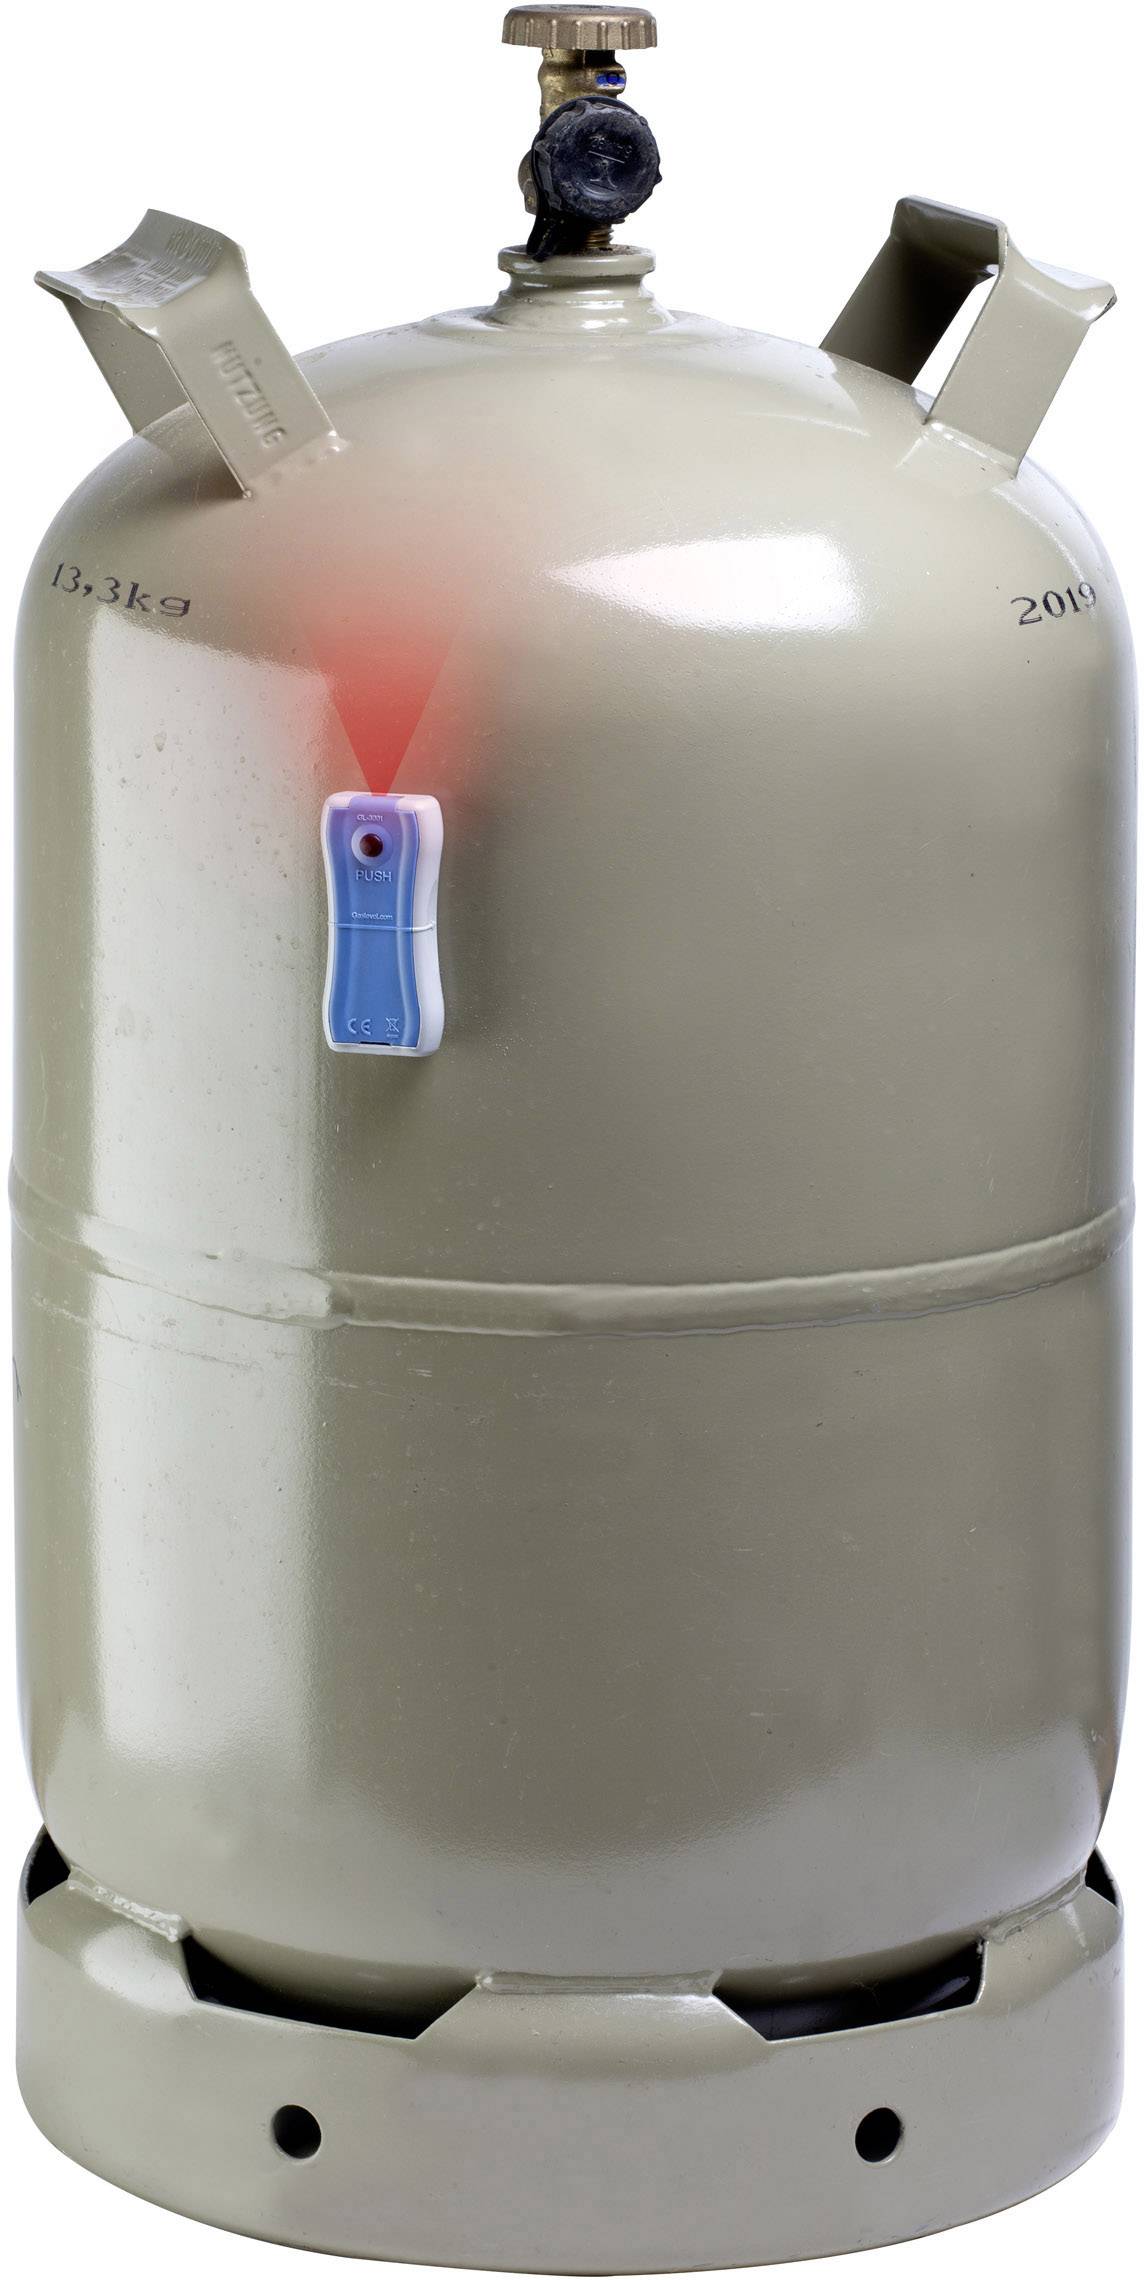 Indikátor hladiny plynu v lahvi, Gaslock GL-3001-21